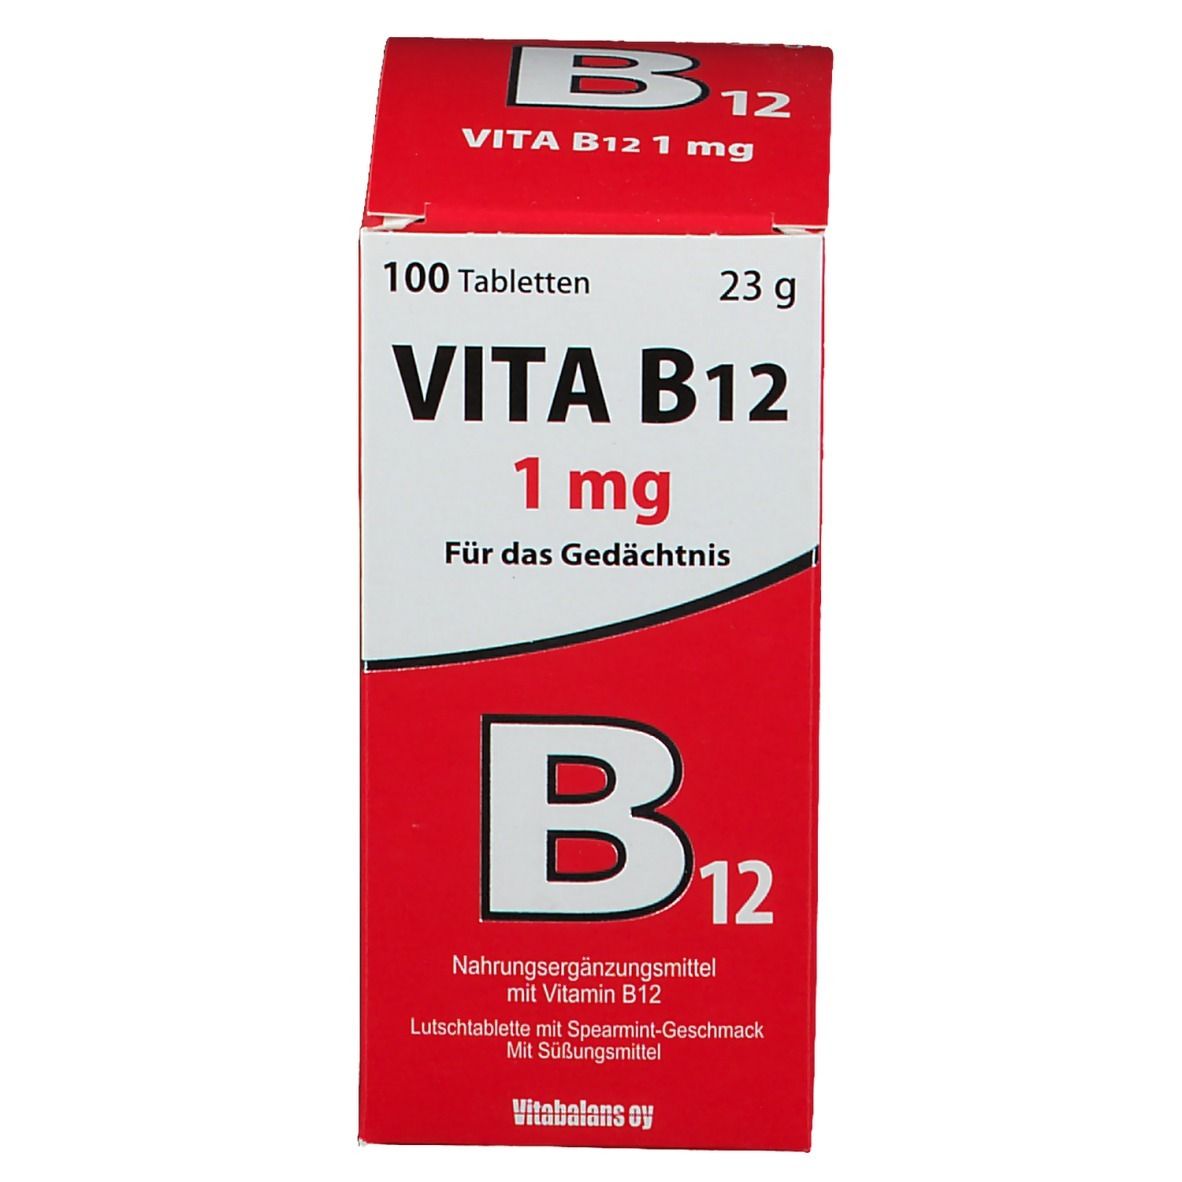 Vita B12 mit Spaermint-Geschmack